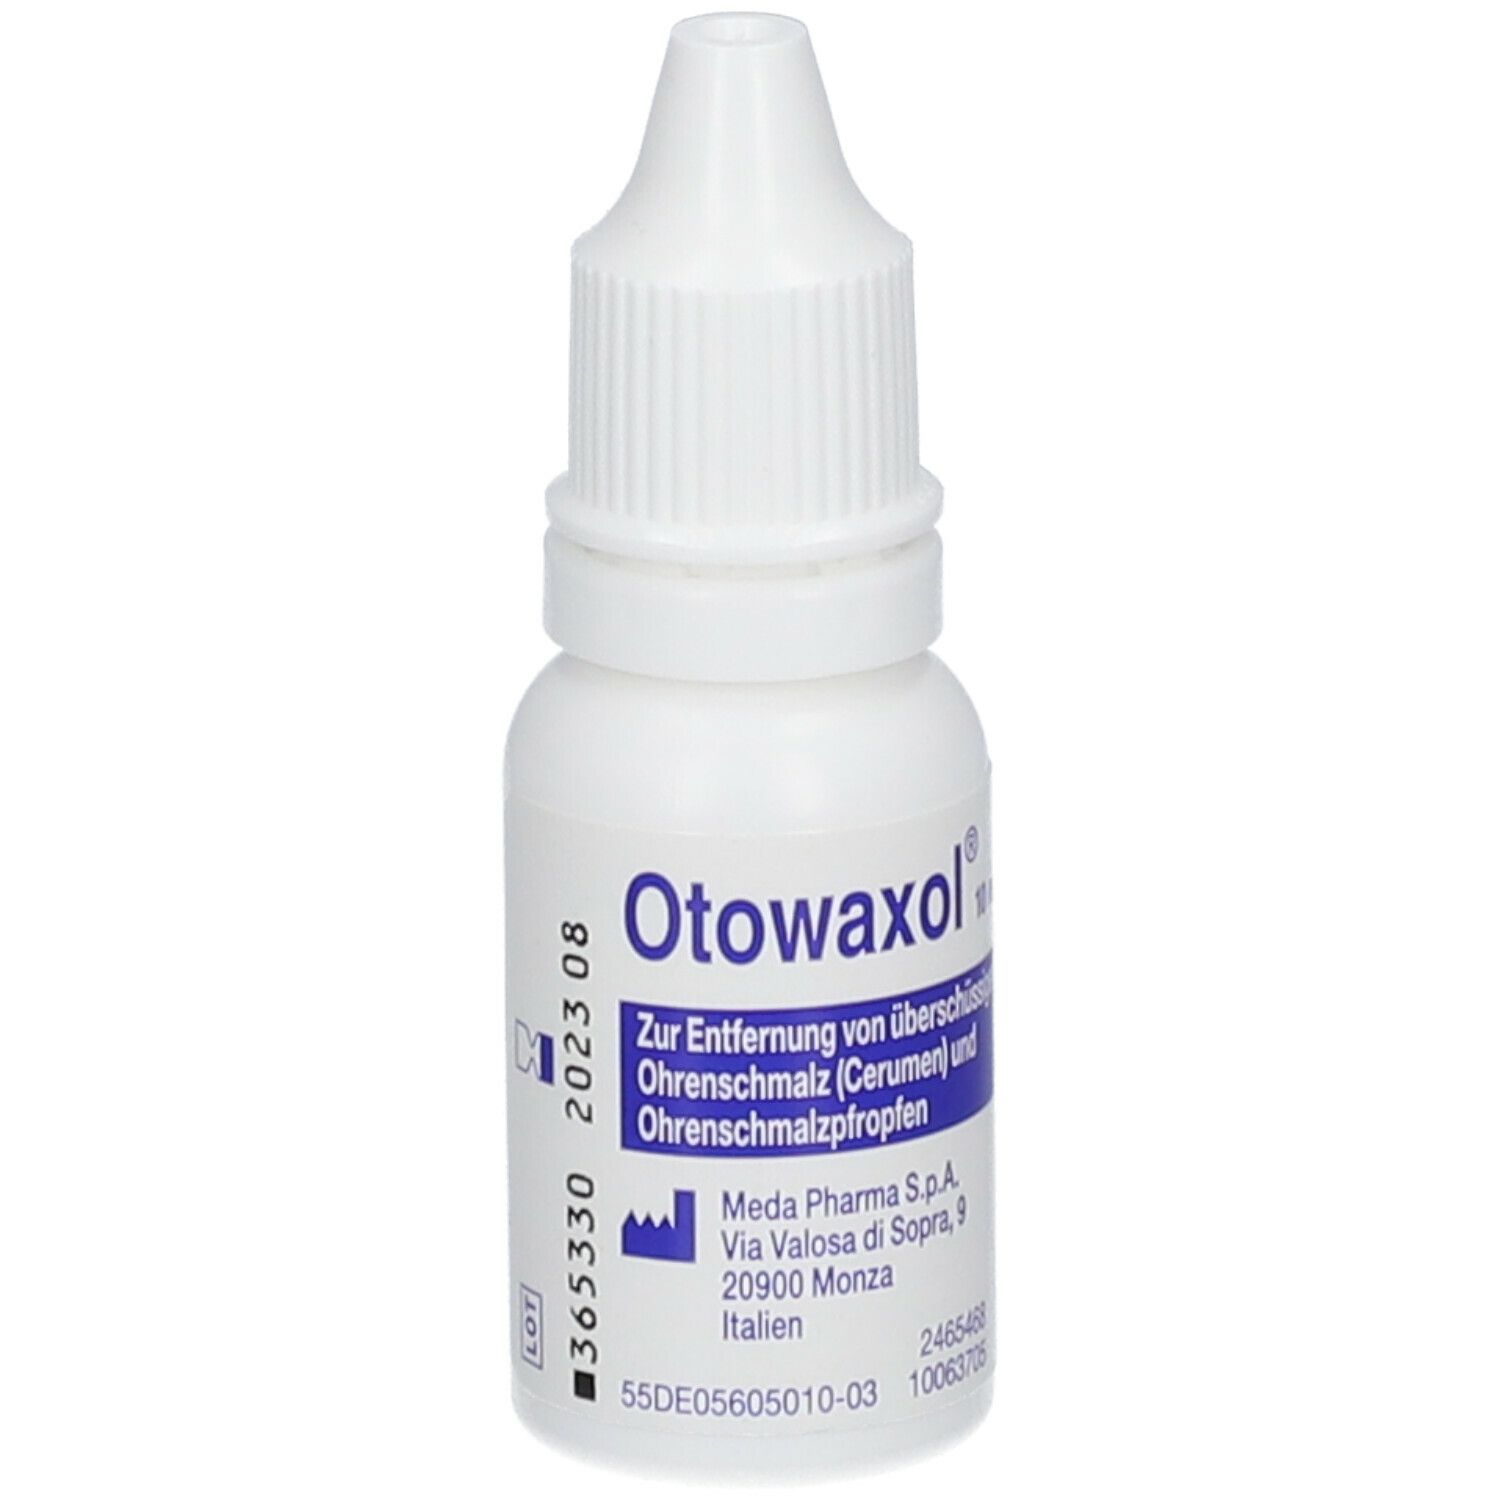 Otowaxol Sine Lösung - Ohrenschmalzentfernung zur sanften Ohreneinigung